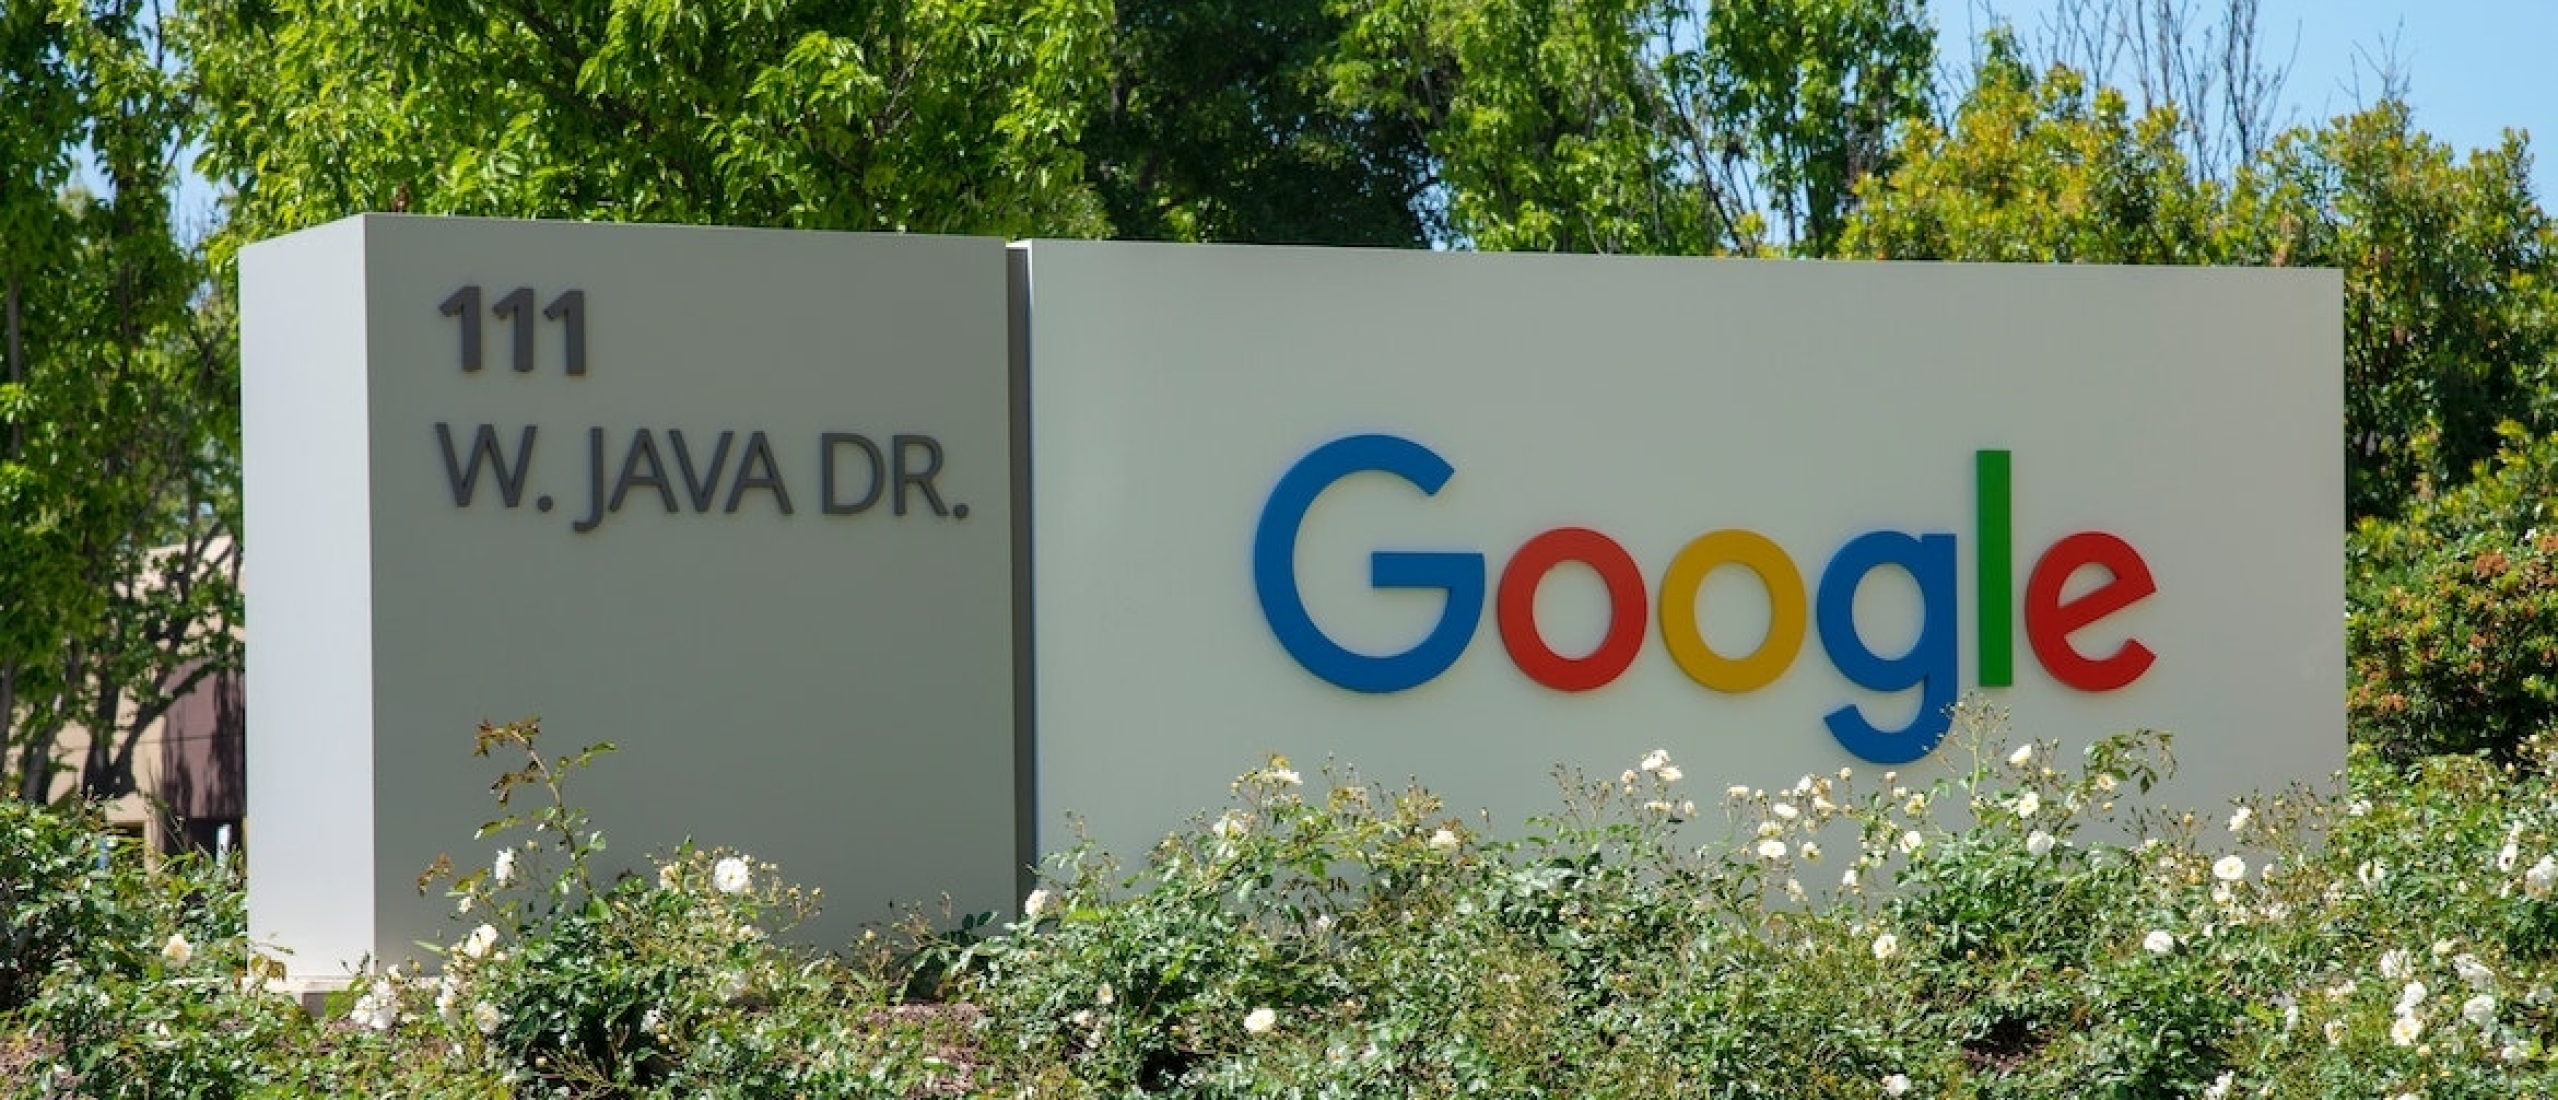 Google brengt zijn halfjaarlijkse core update uit